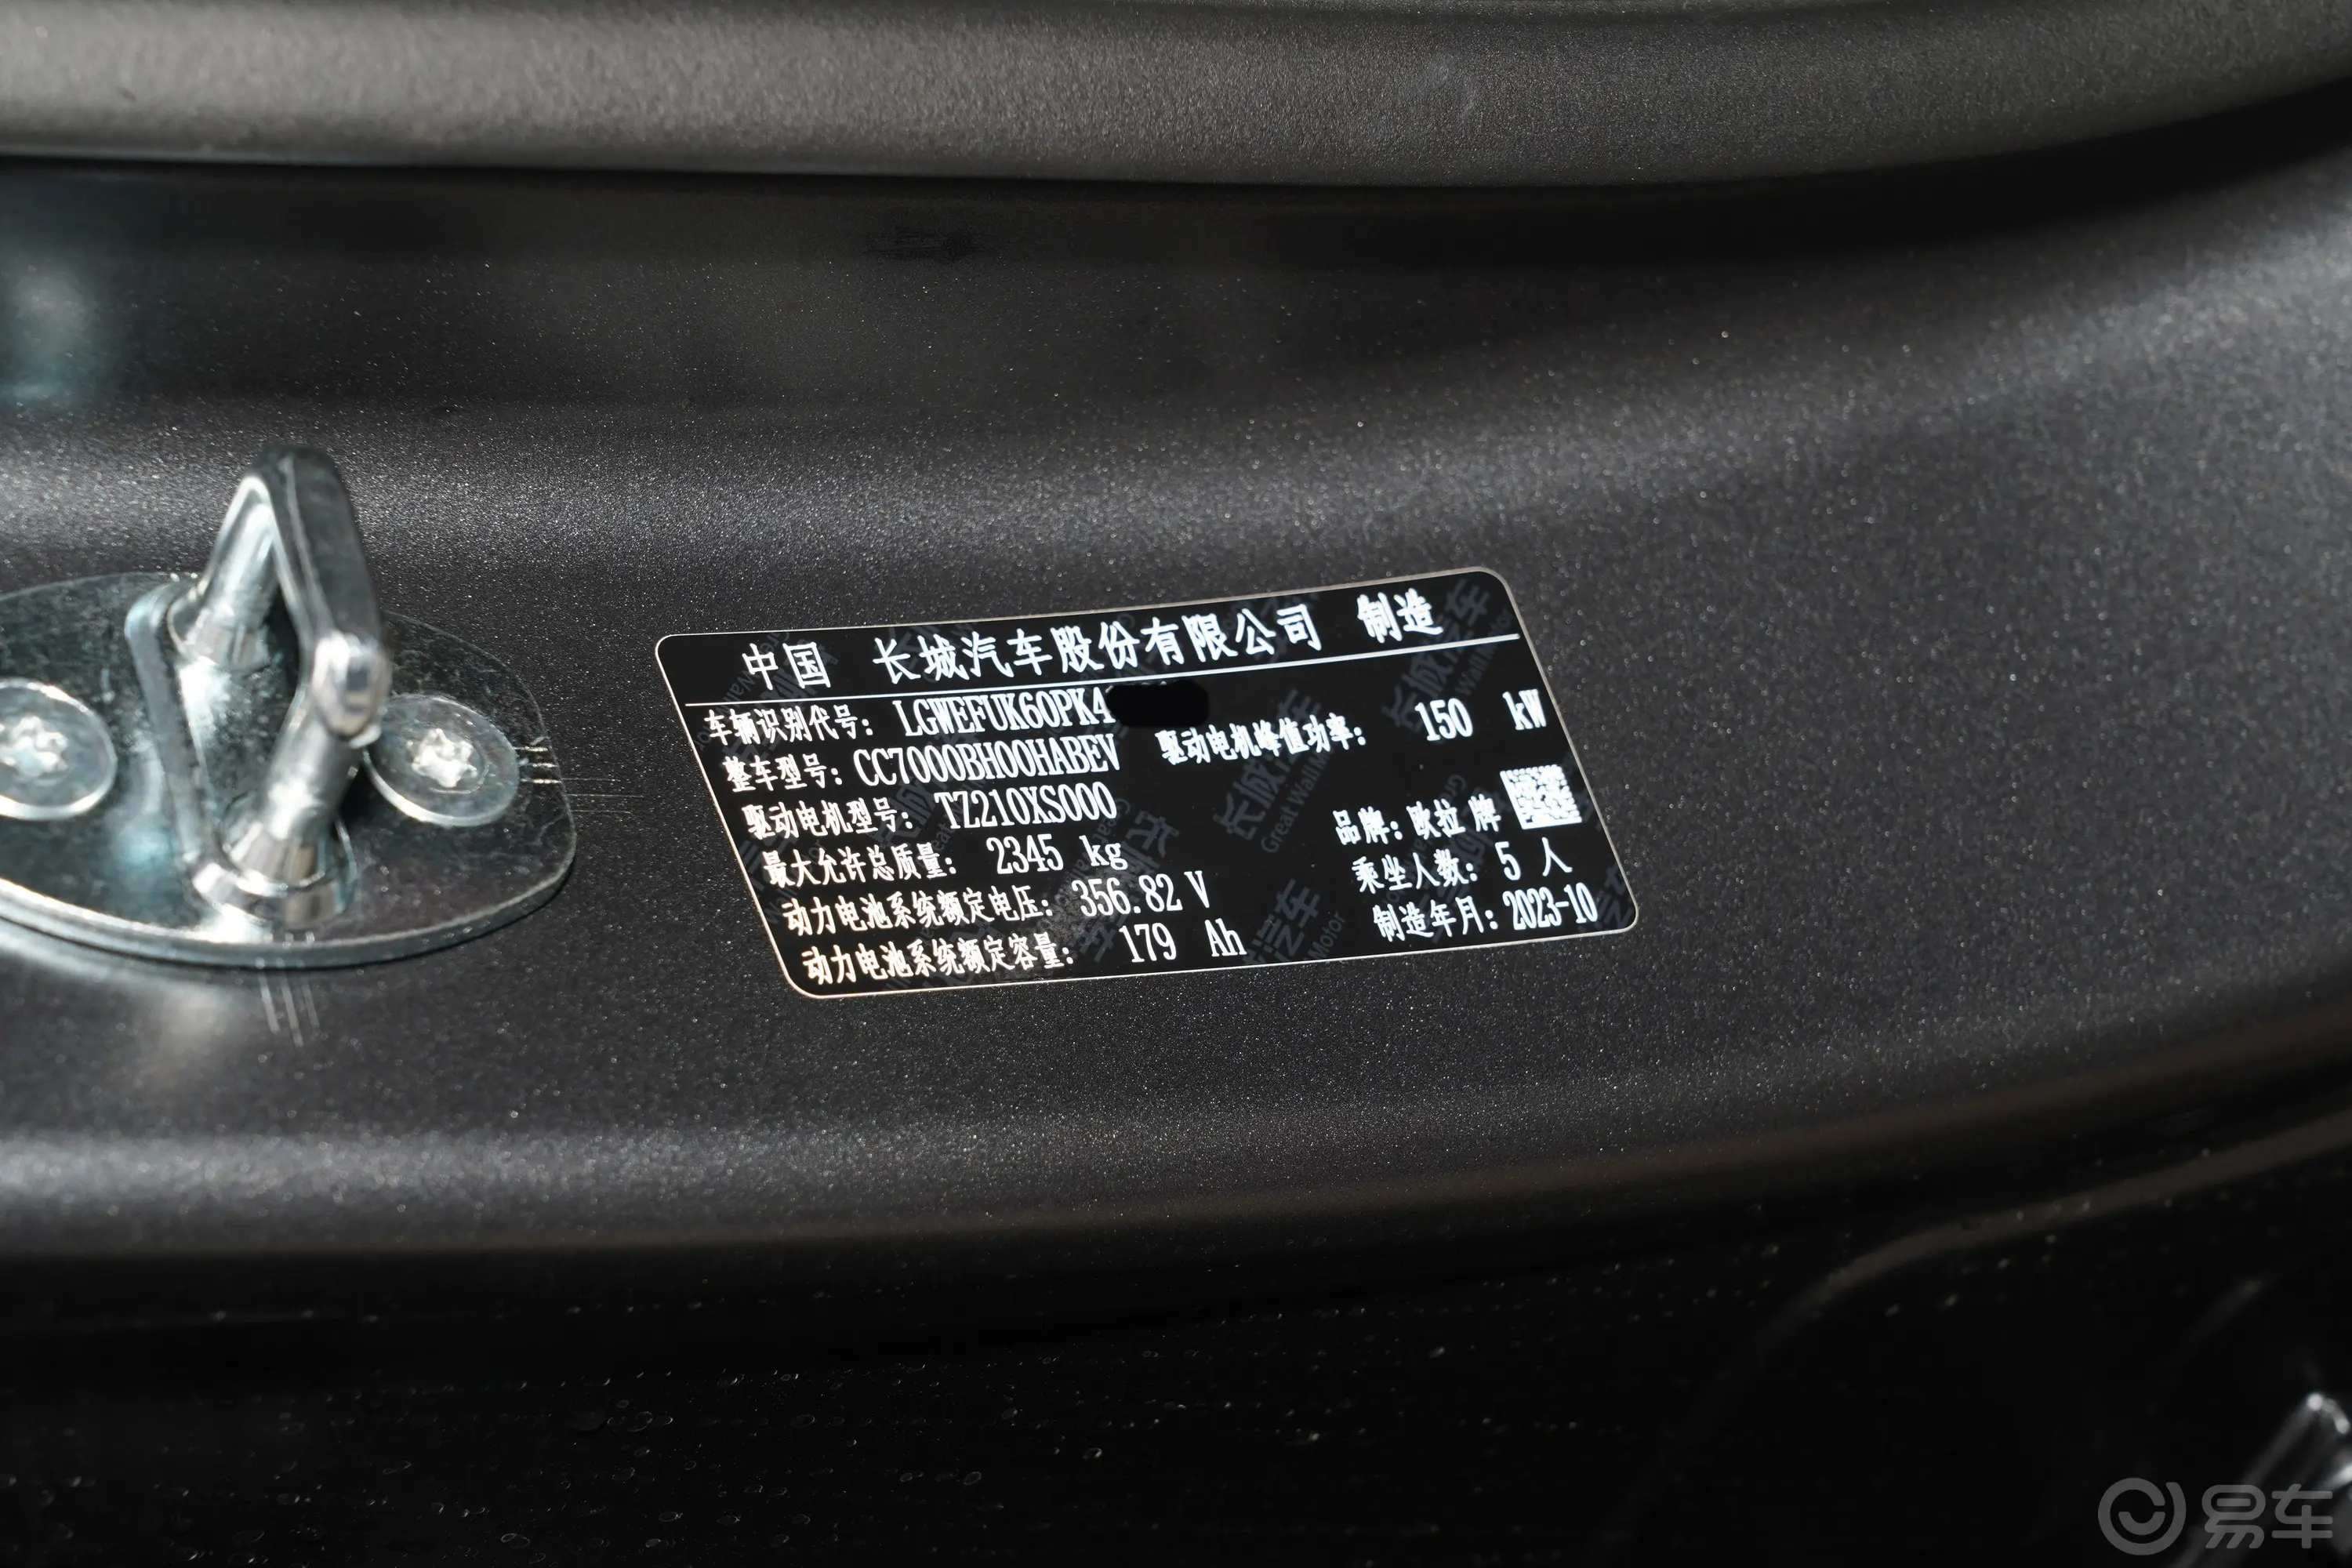 欧拉闪电猫暗夜版 555km 前驱尊贵版车辆信息铭牌